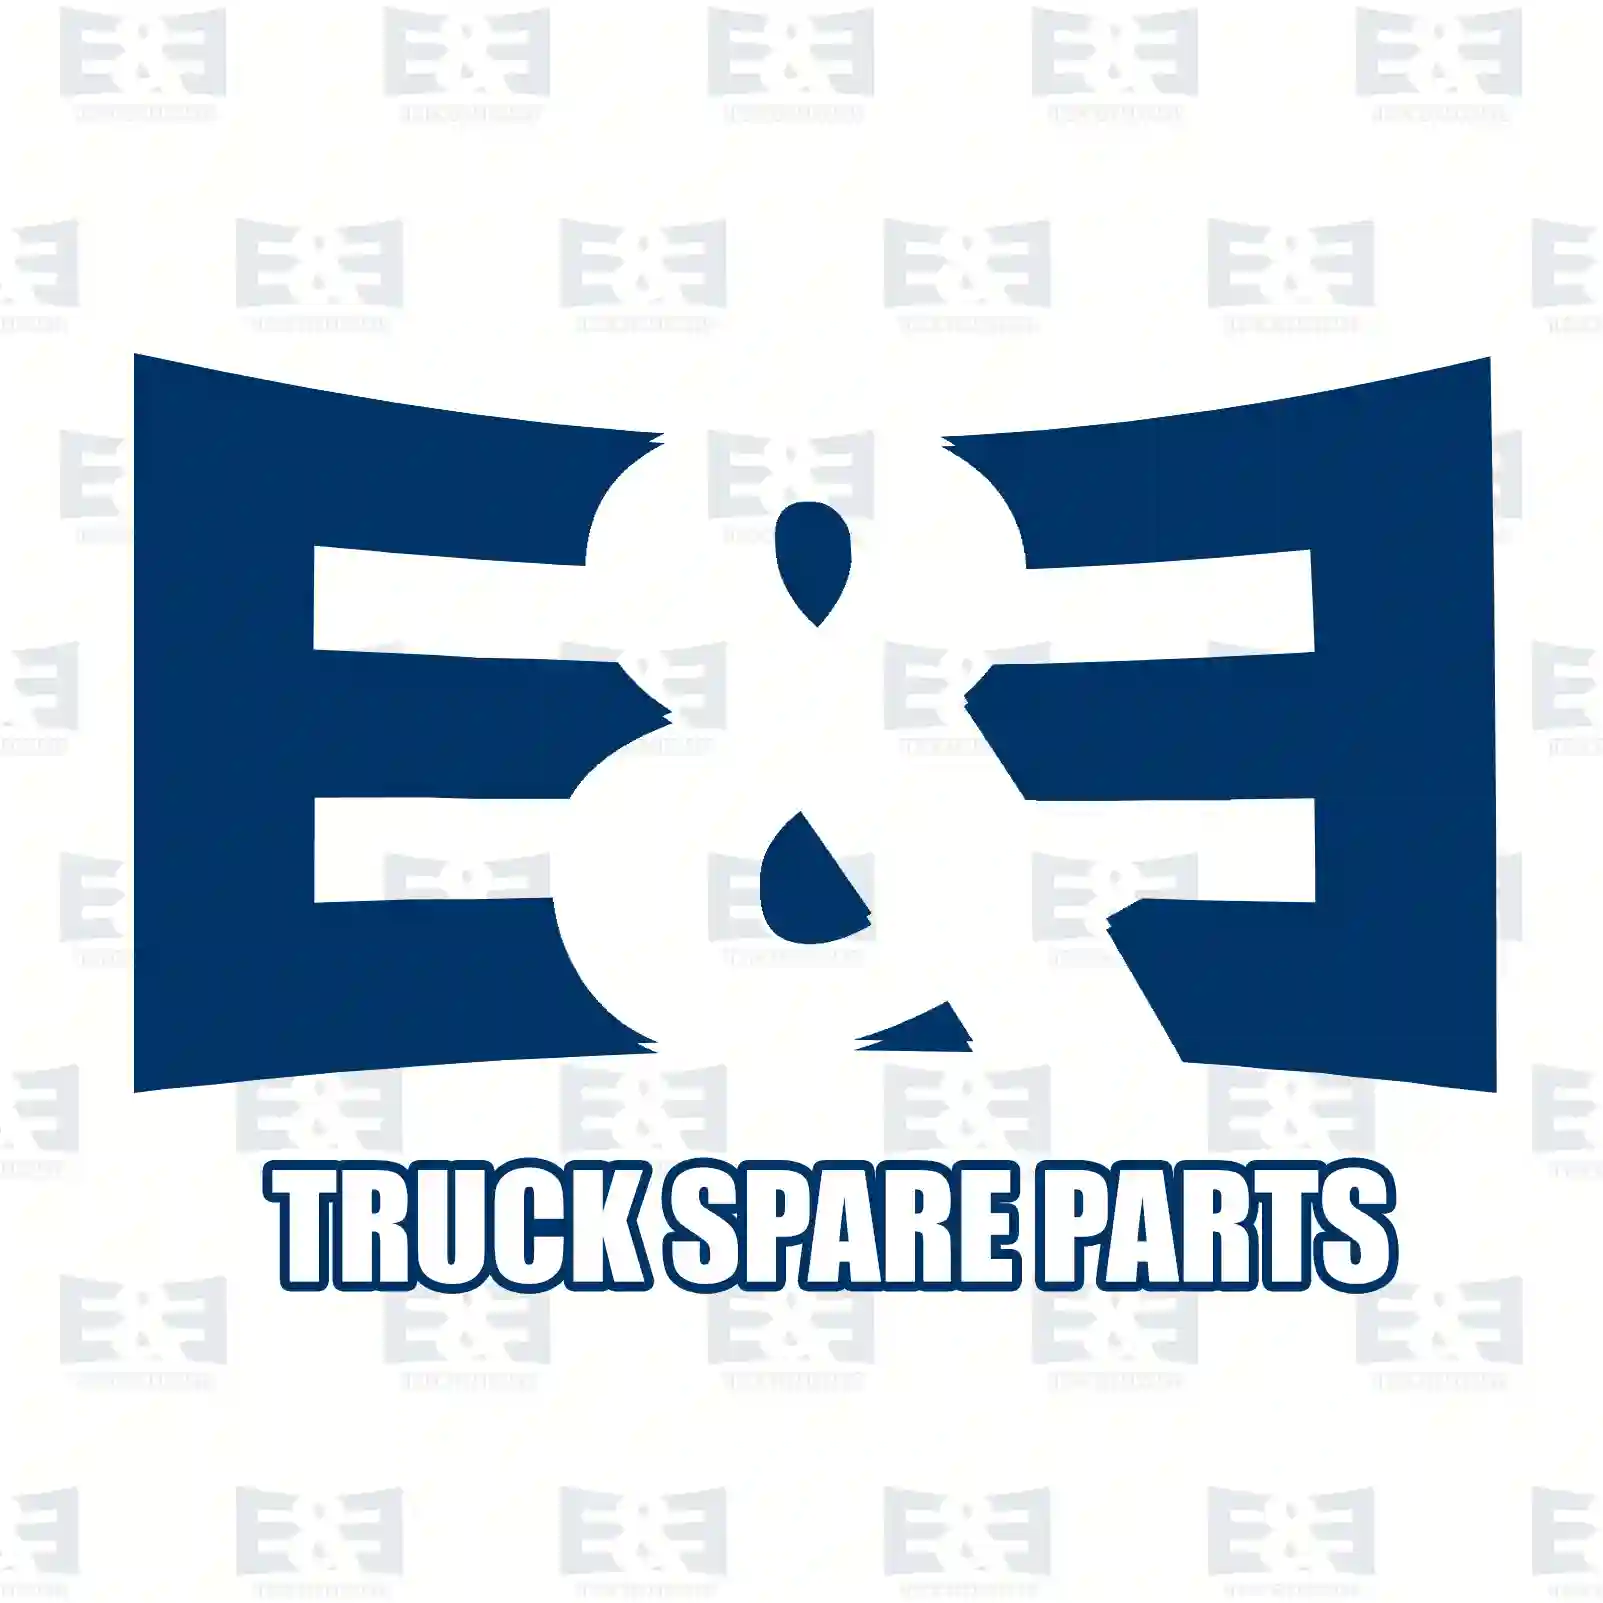 Stabilizer stay, 2E2283843, 3112282, ZG41786-0008, ||  2E2283843 E&E Truck Spare Parts | Truck Spare Parts, Auotomotive Spare Parts Stabilizer stay, 2E2283843, 3112282, ZG41786-0008, ||  2E2283843 E&E Truck Spare Parts | Truck Spare Parts, Auotomotive Spare Parts